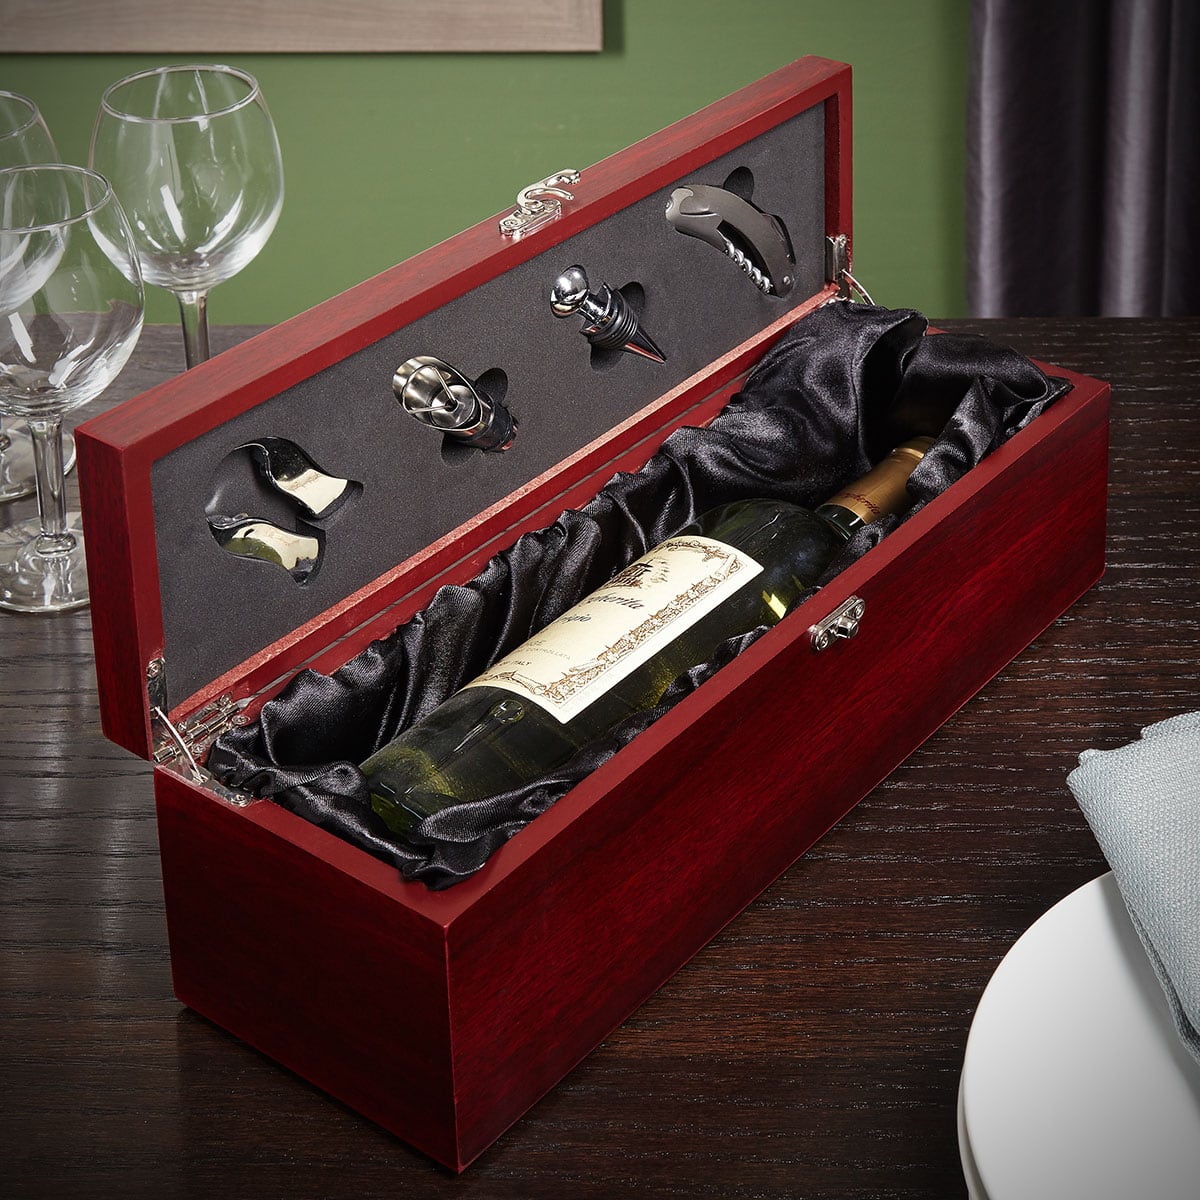 Bonacorso Wine Gift Box Set, Engravable